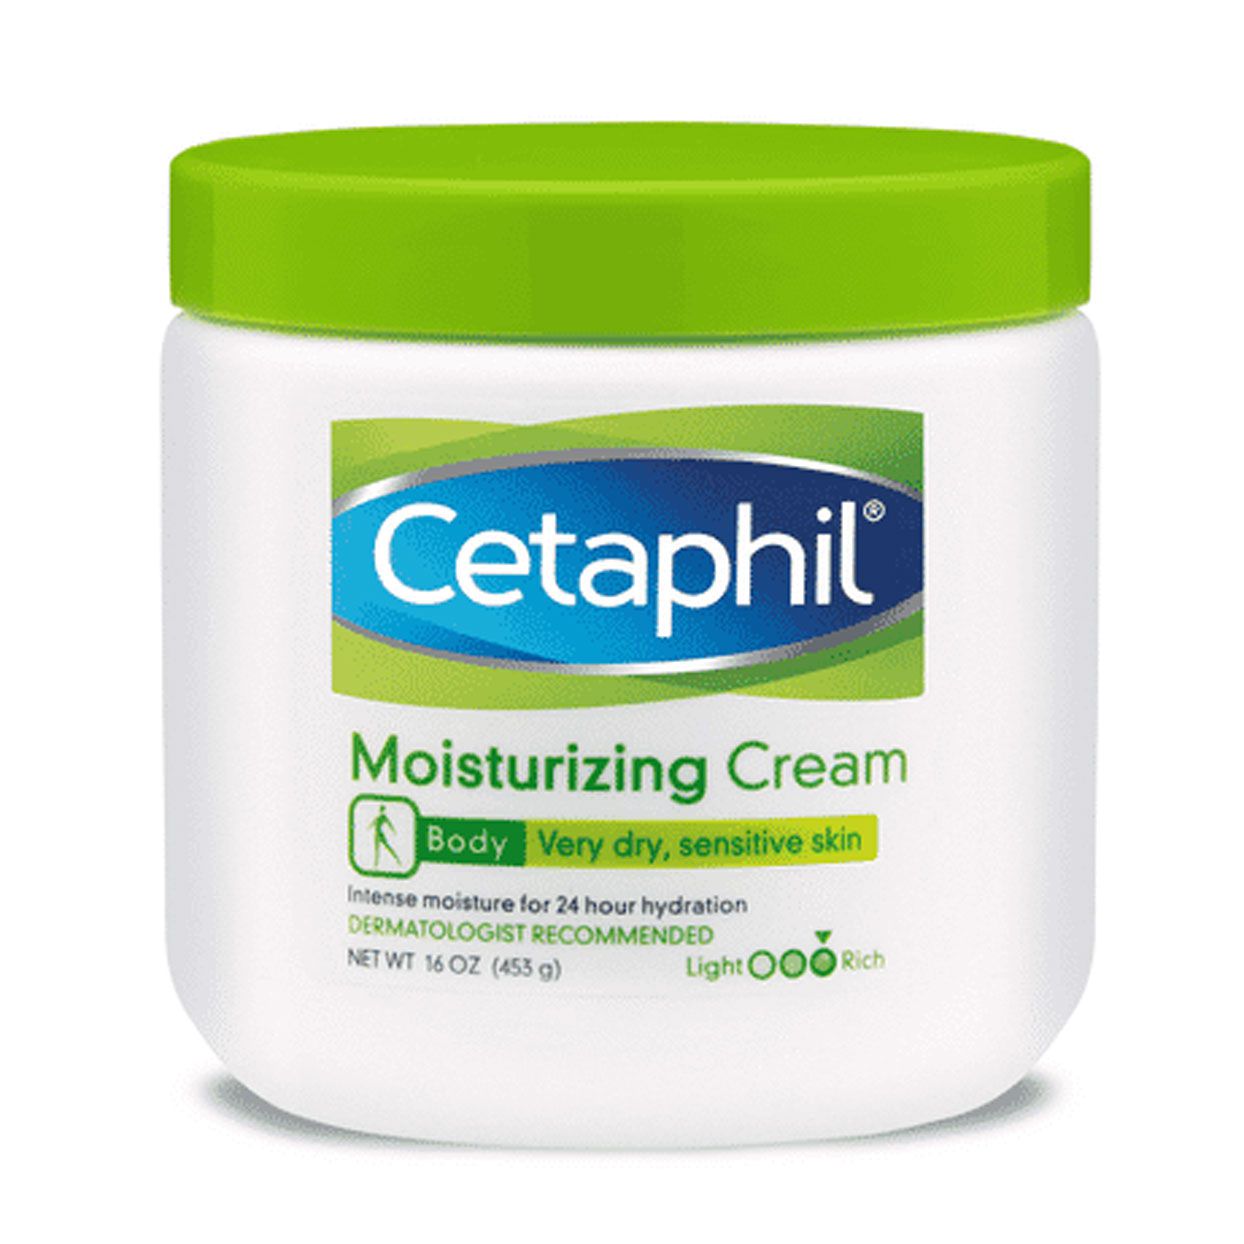 Cetaphil_Moisturizing_Cream